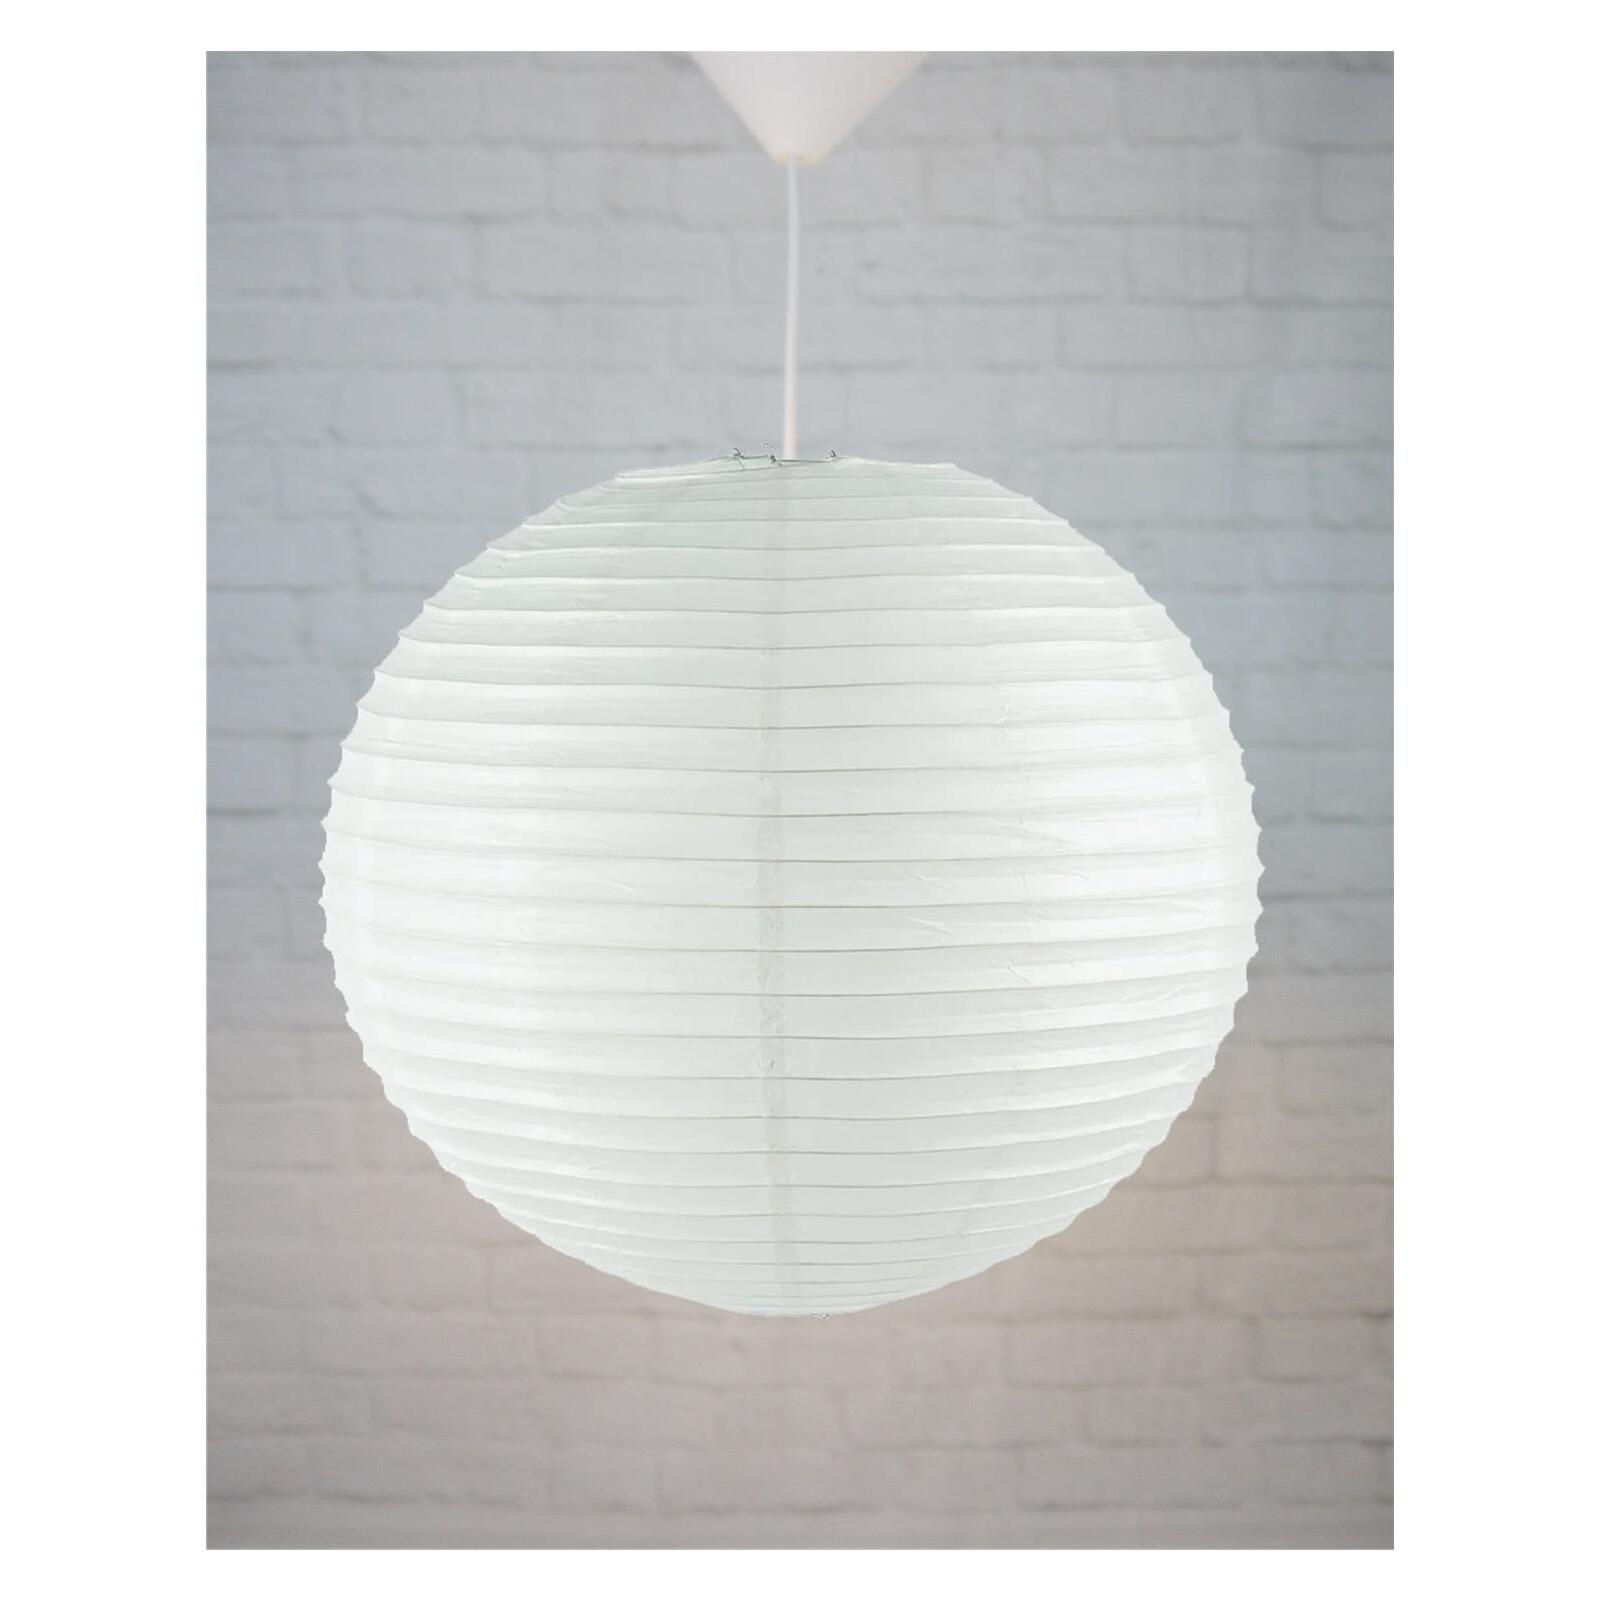 Papierballon natur/weiß - Lampen & Leuchten Onlineshop | Deckenlampen